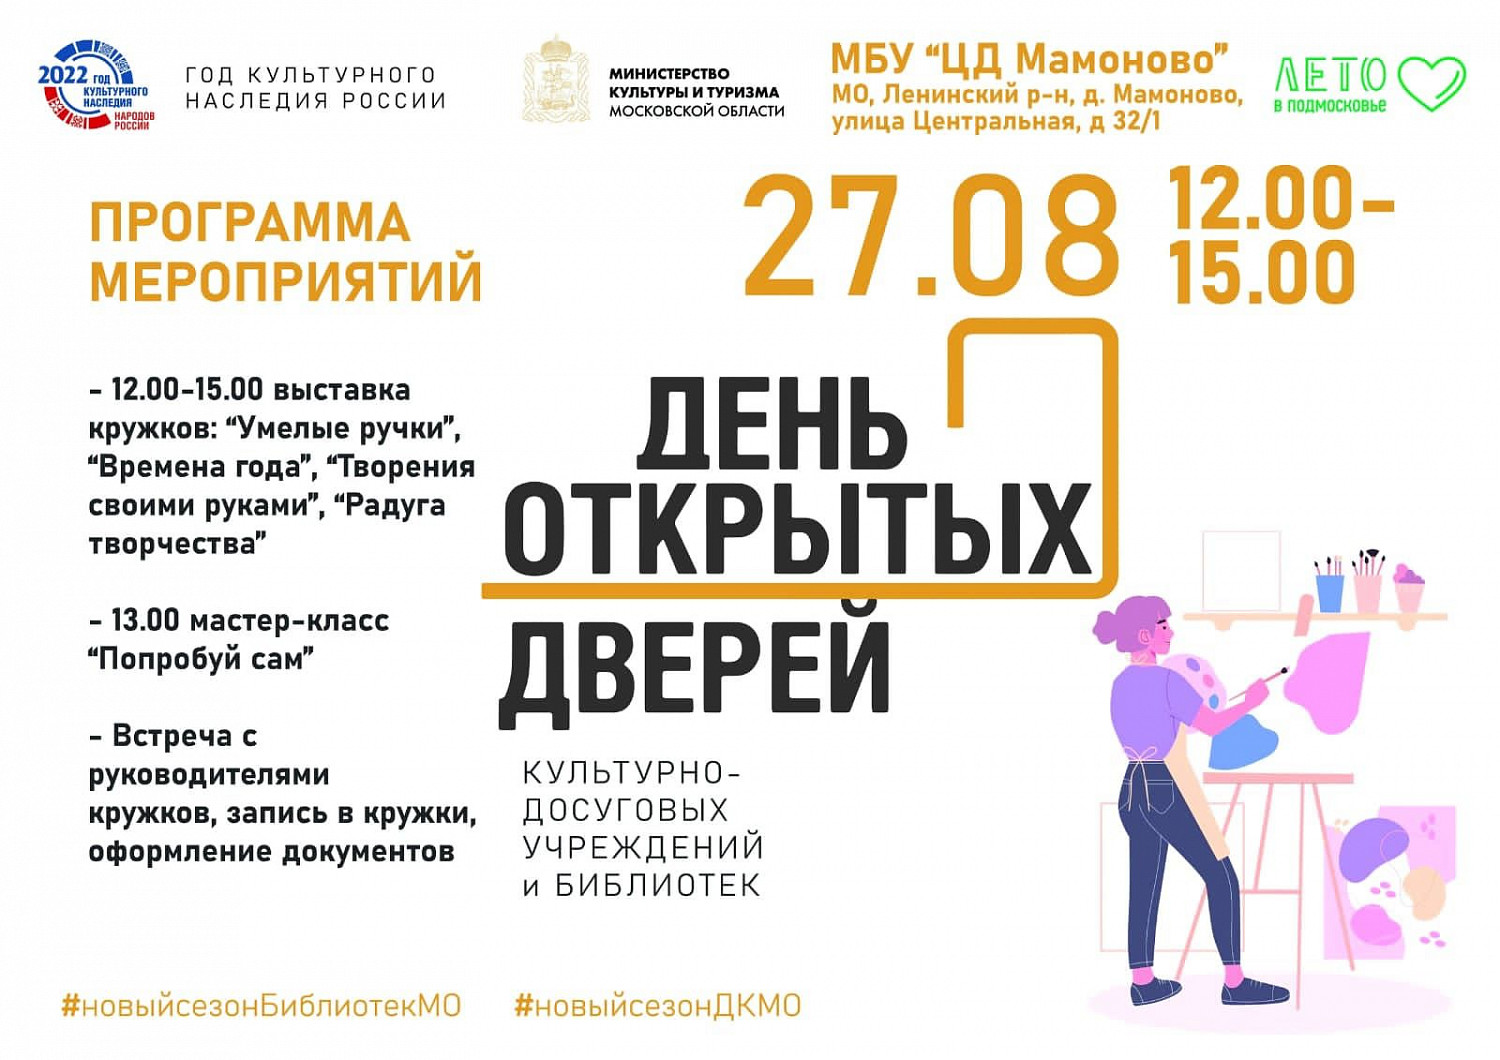 «День открытых дверей» пройдет в учреждениях культуры и библиотеках Ленинского округа в последние выходные лета